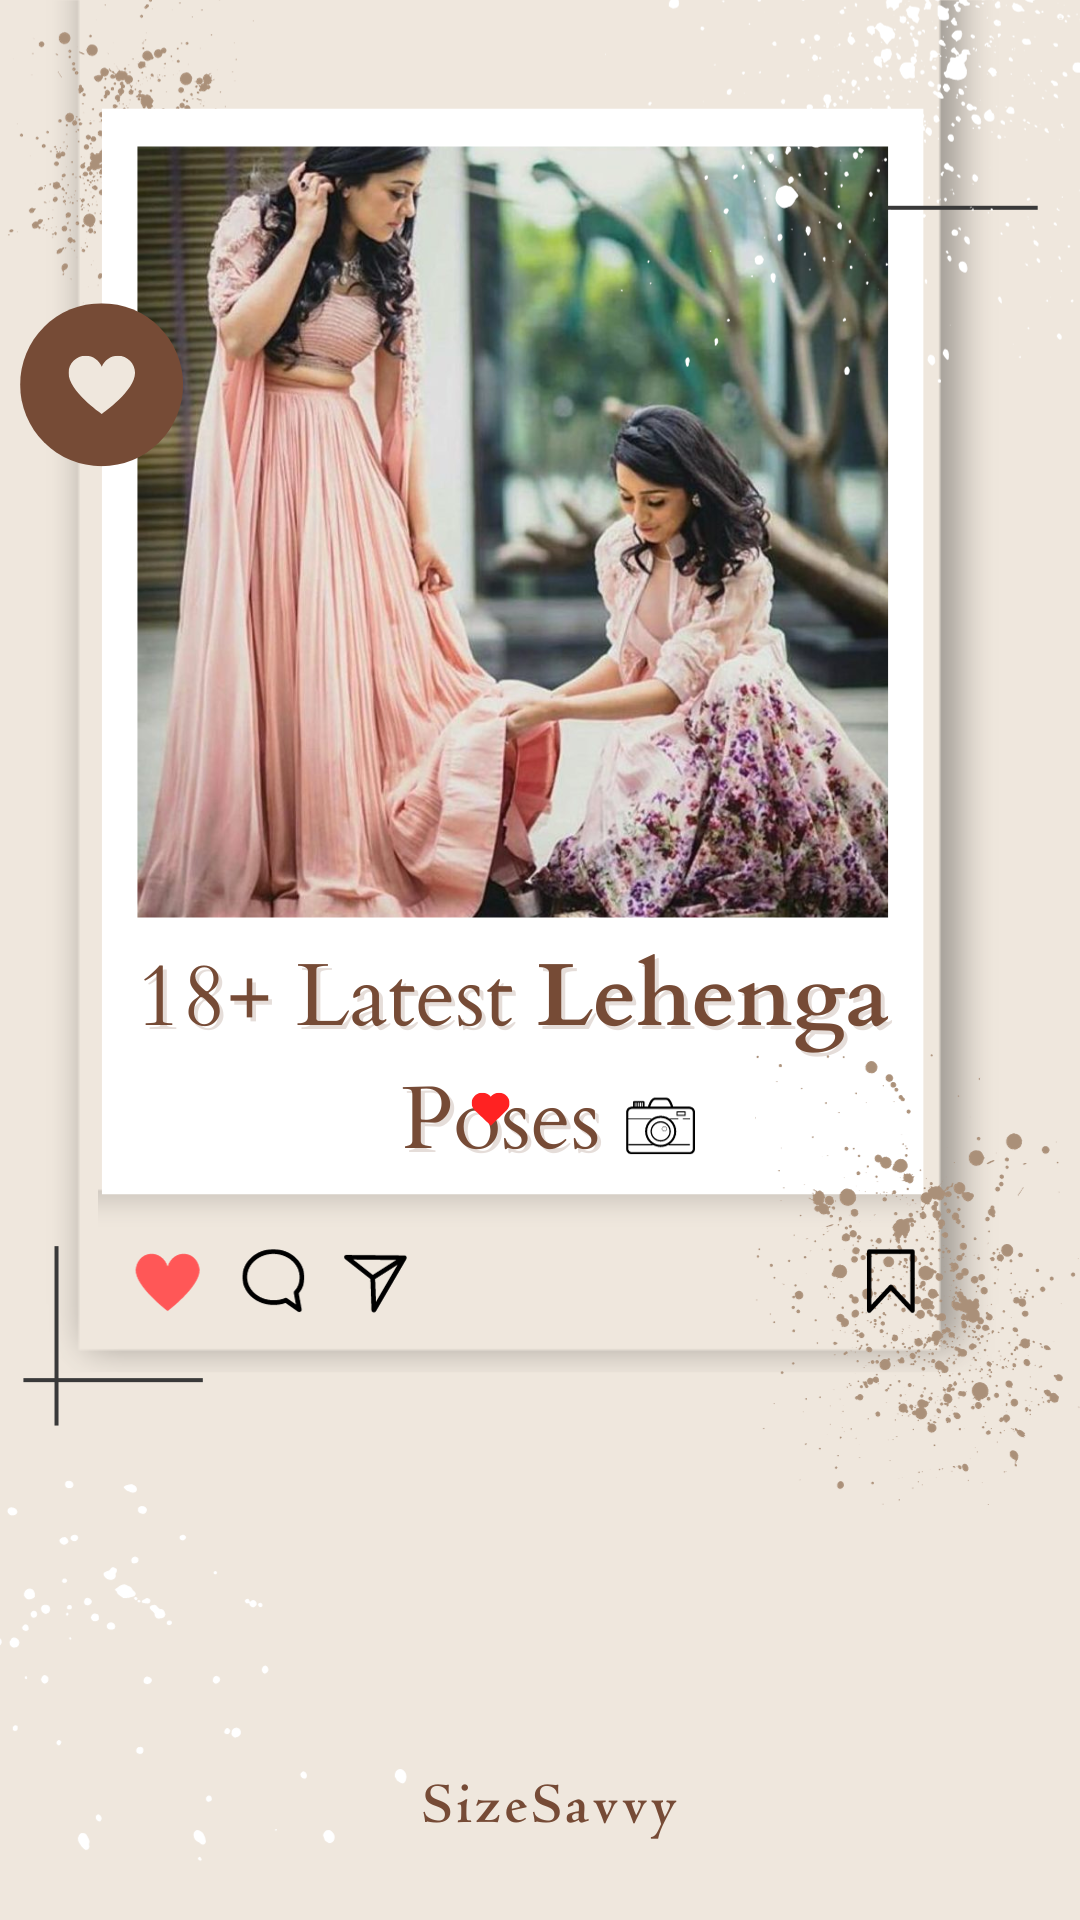 Sitting Poses in Lehenga | Lehenga Poses for girls | Lehenga Lover Poses |  Poses in Lehenga #lehenga - YouTube